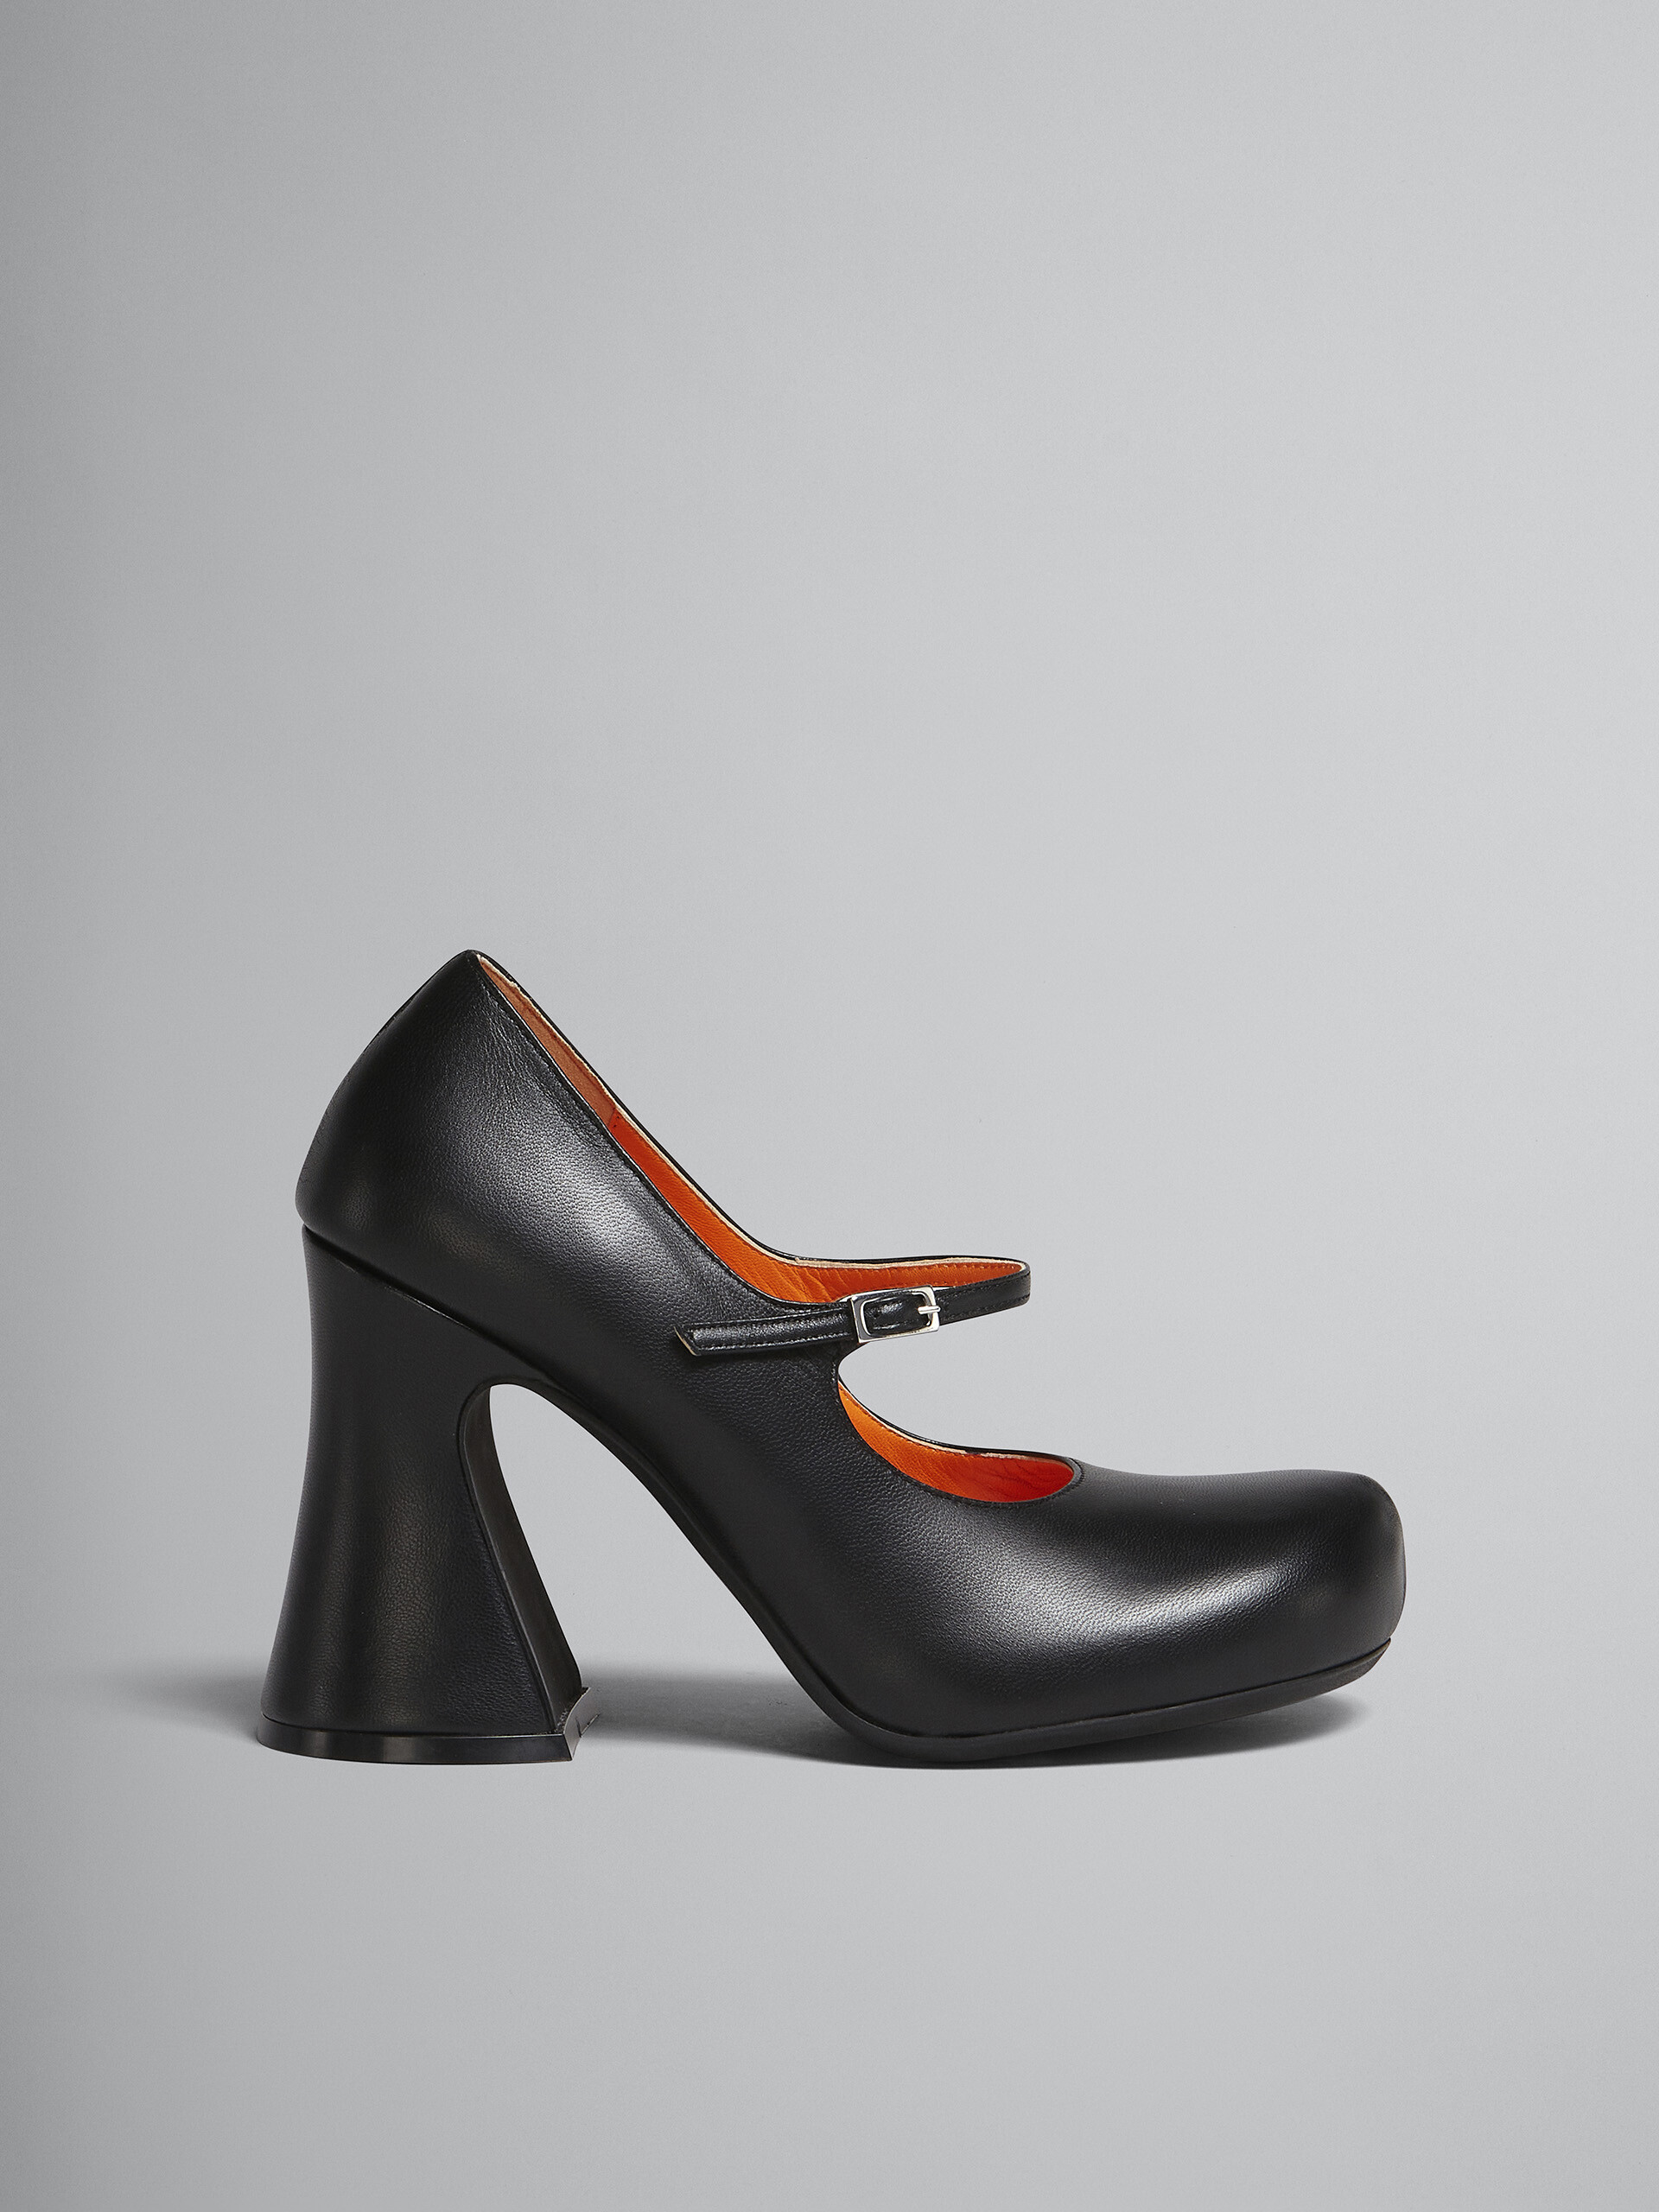 Zapatos de salón Mary Jane de piel negra - Salones - Image 1